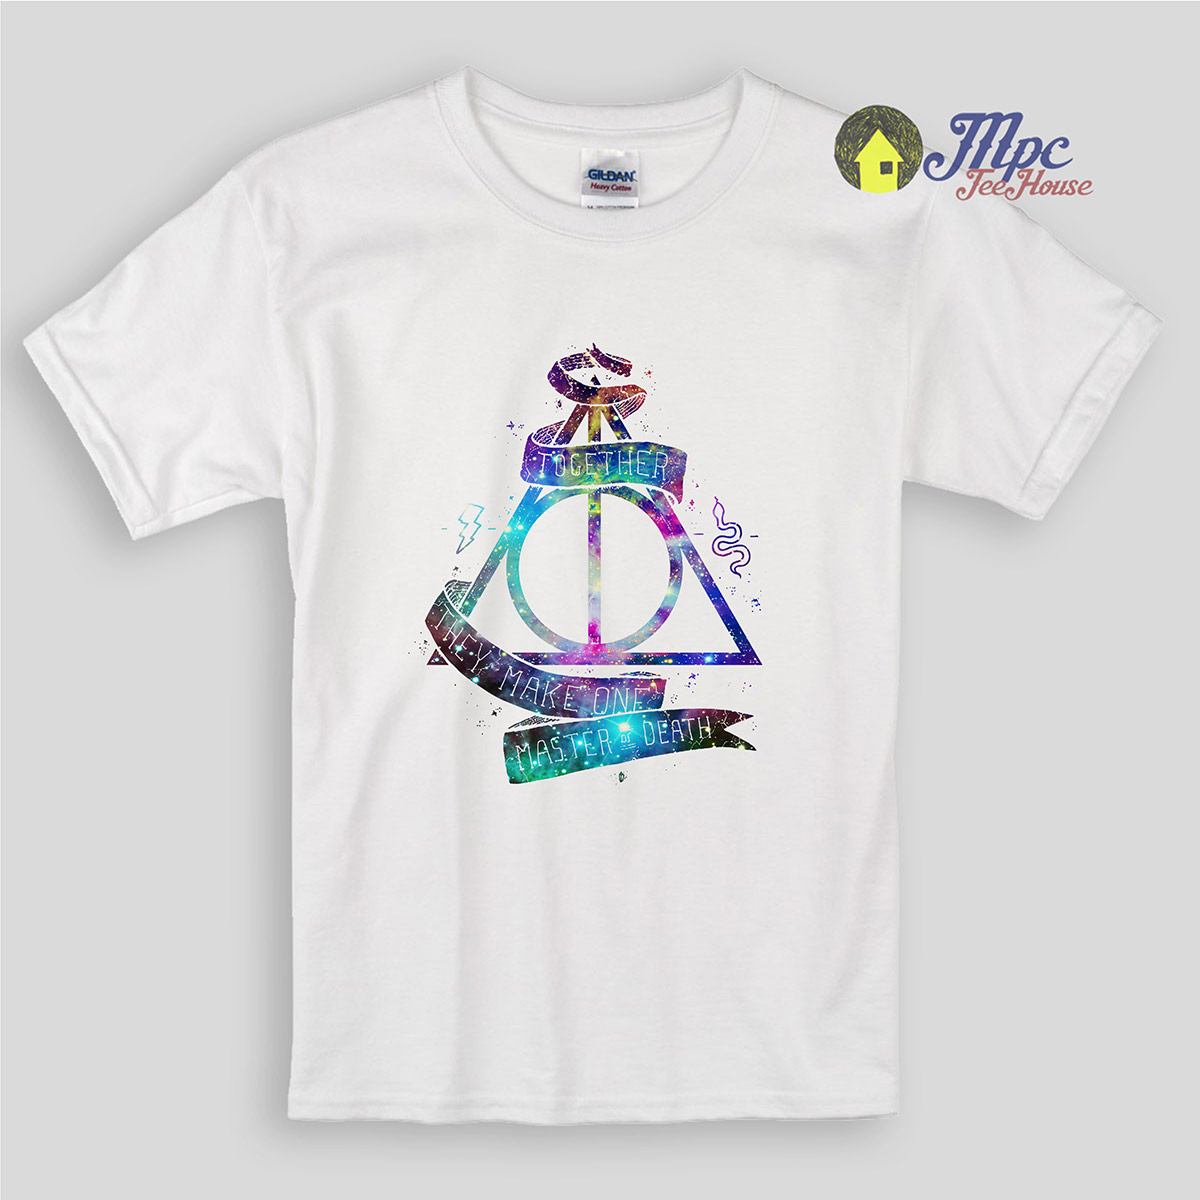 Ga naar het circuit Overeenkomstig Ritmisch Harry Potter Deathly Hallows Galaxy Kids T Shirts | Mpcteehouse: 80s Tees